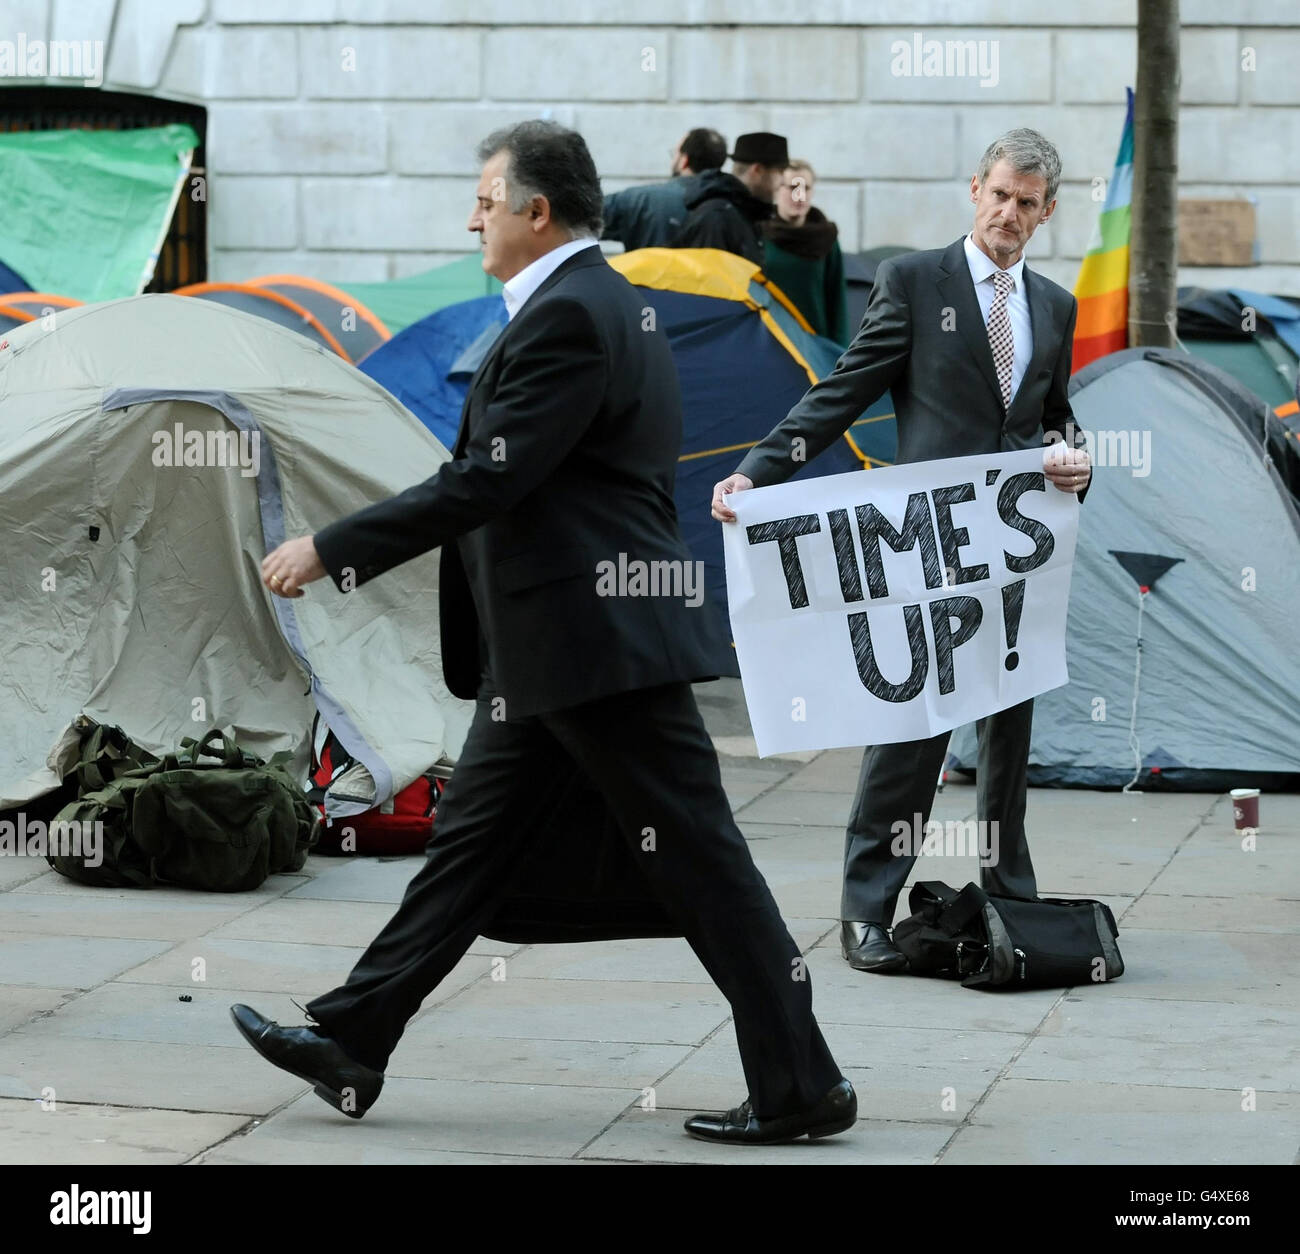 Les employés de bureau passent devant des manifestants anticapitalistes campés devant la cathédrale Saint-Paul, dans le centre de Londres, dans le cadre de la manifestation « Occupy the London stock Exchange ». Banque D'Images